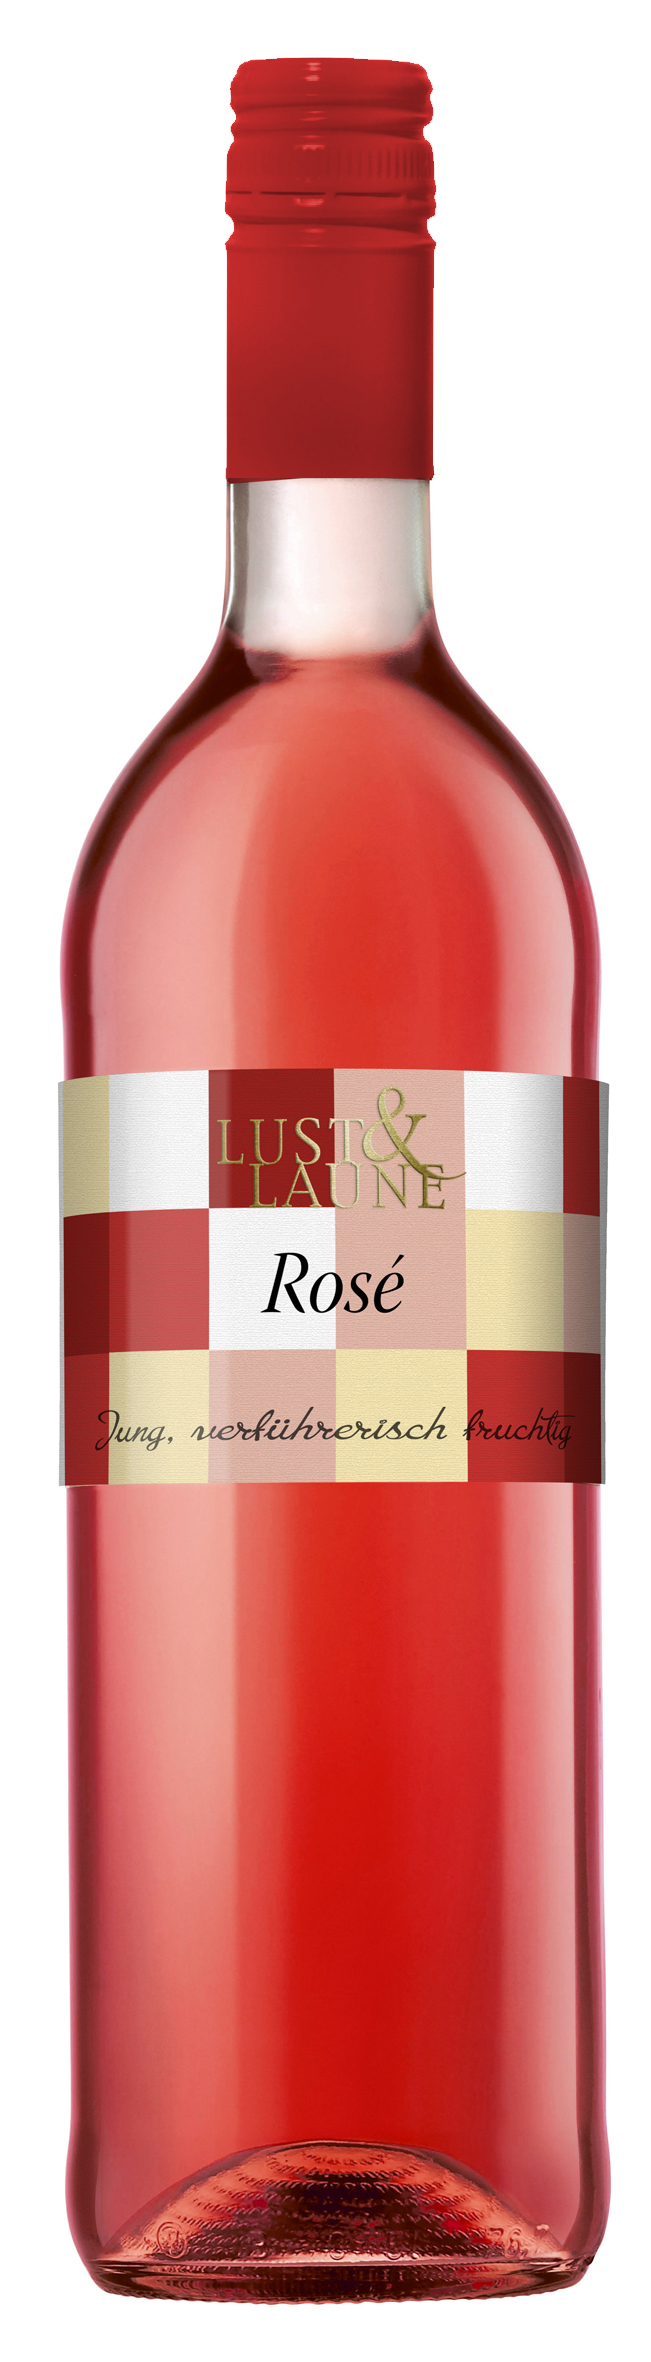 Lust & Laune Rosé 0,75 L - Bottwartaler Winzer